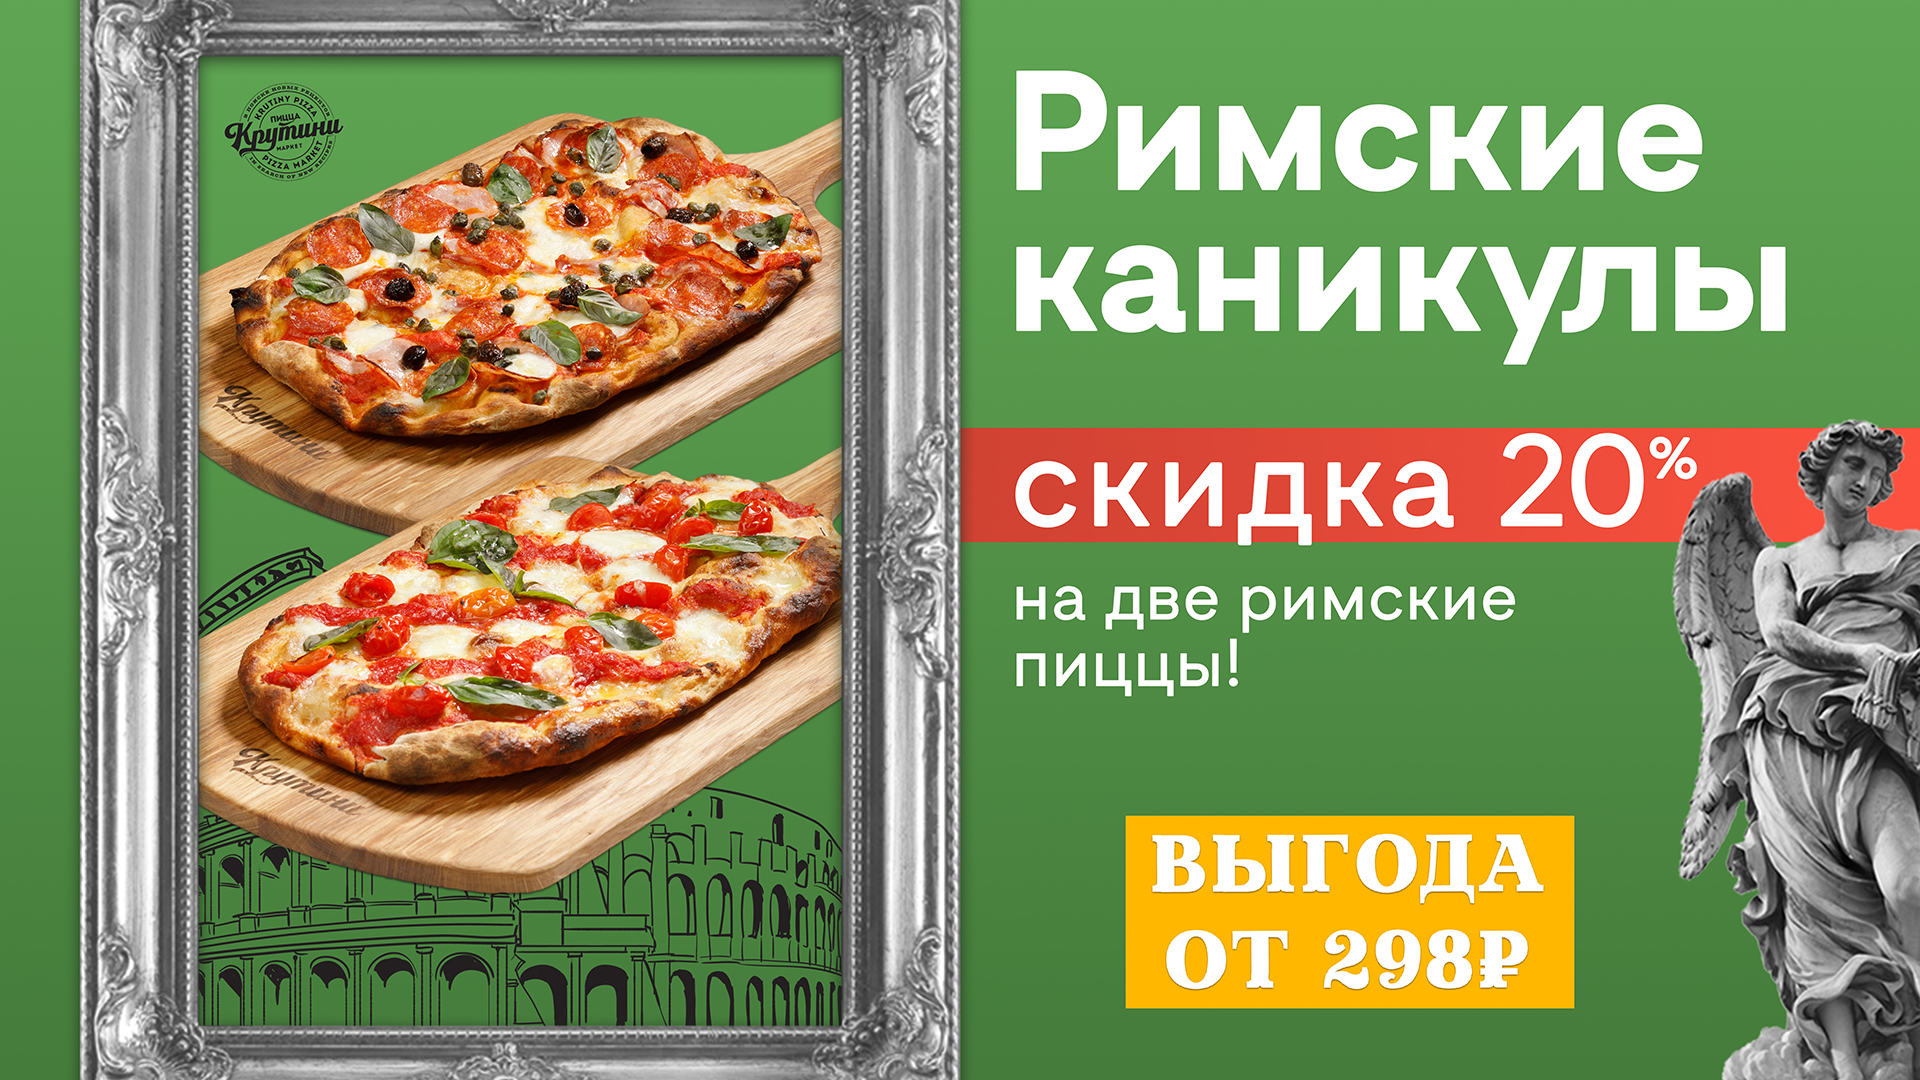 Заказать пиццу по акции в москве